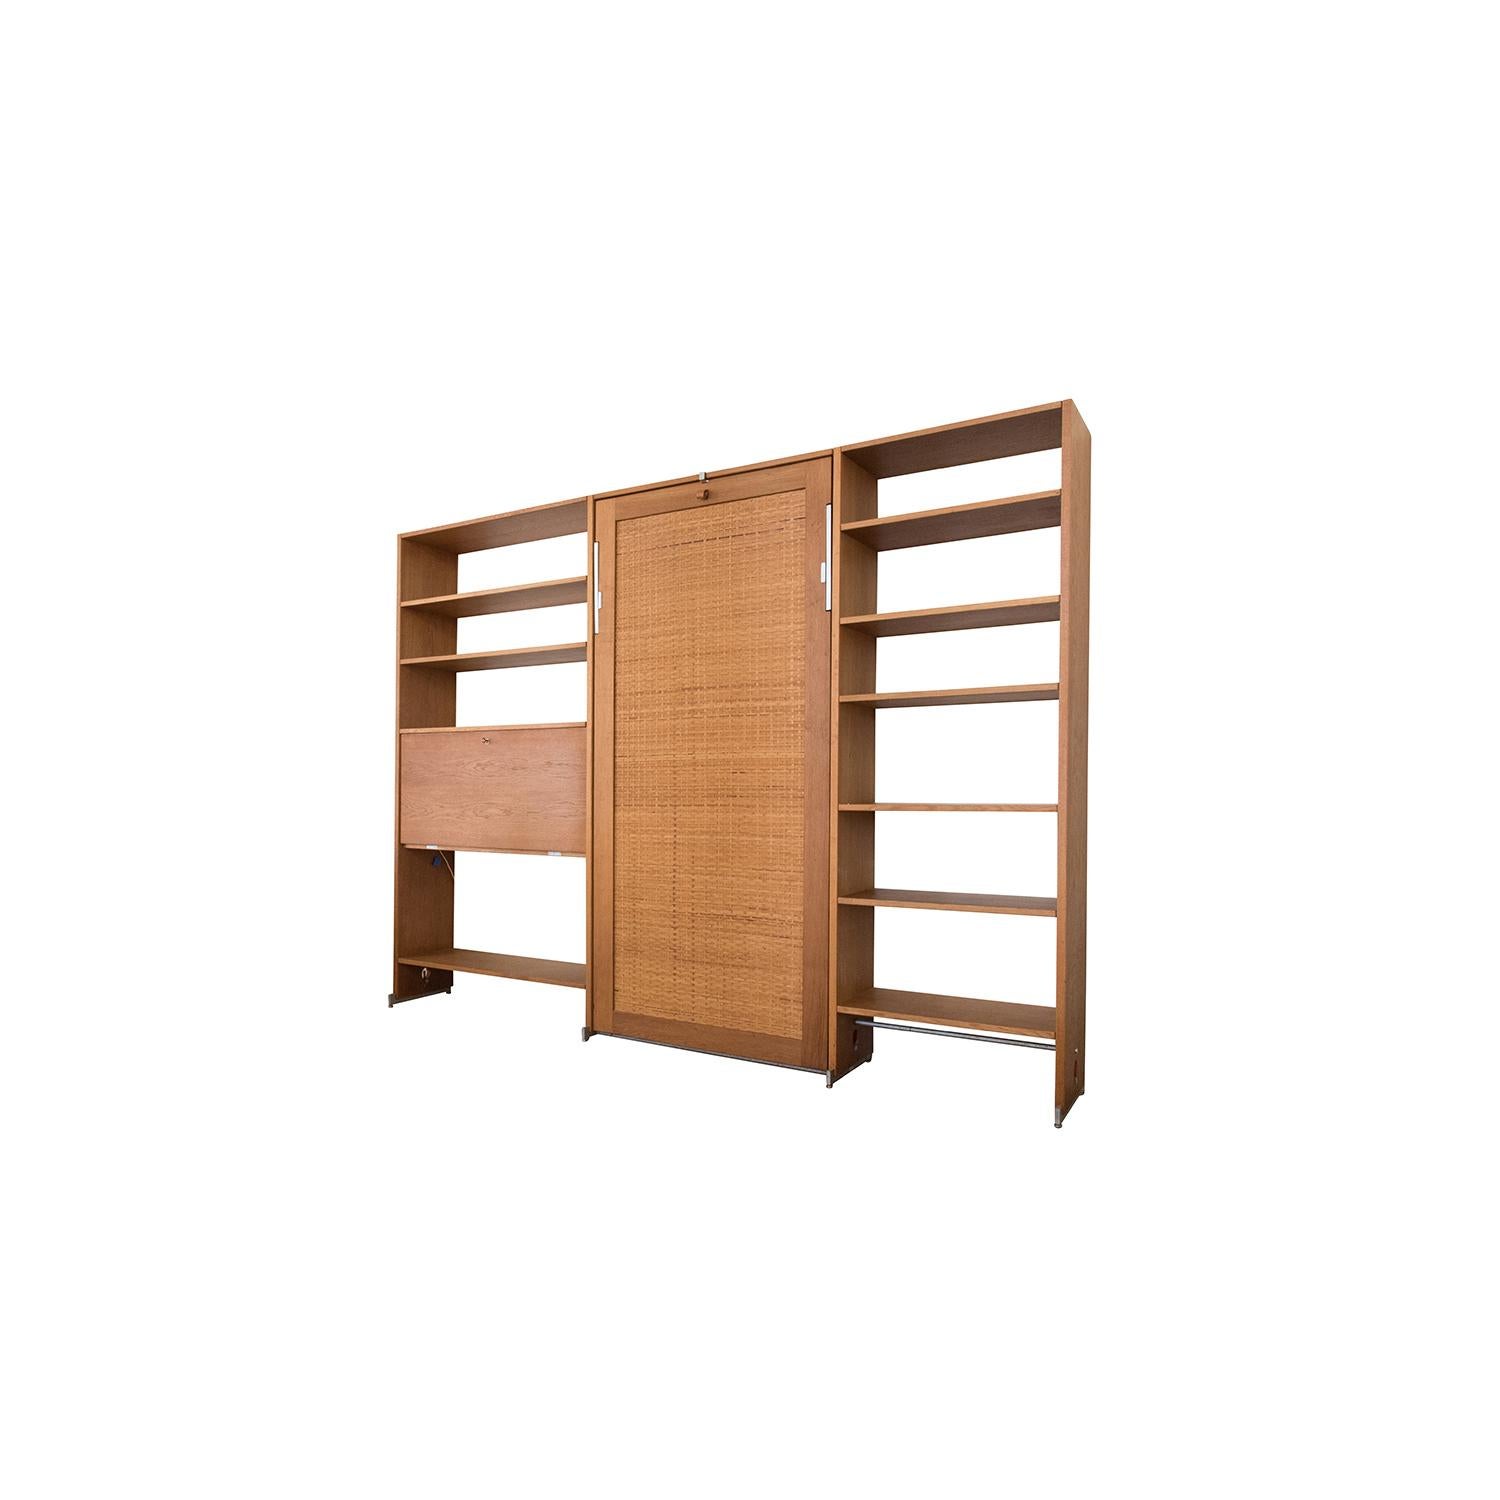 Scandinavian Modern Danish Modern RY100 Murphy Bed, Desk & Shelving System by Hans J Wegner for Ry